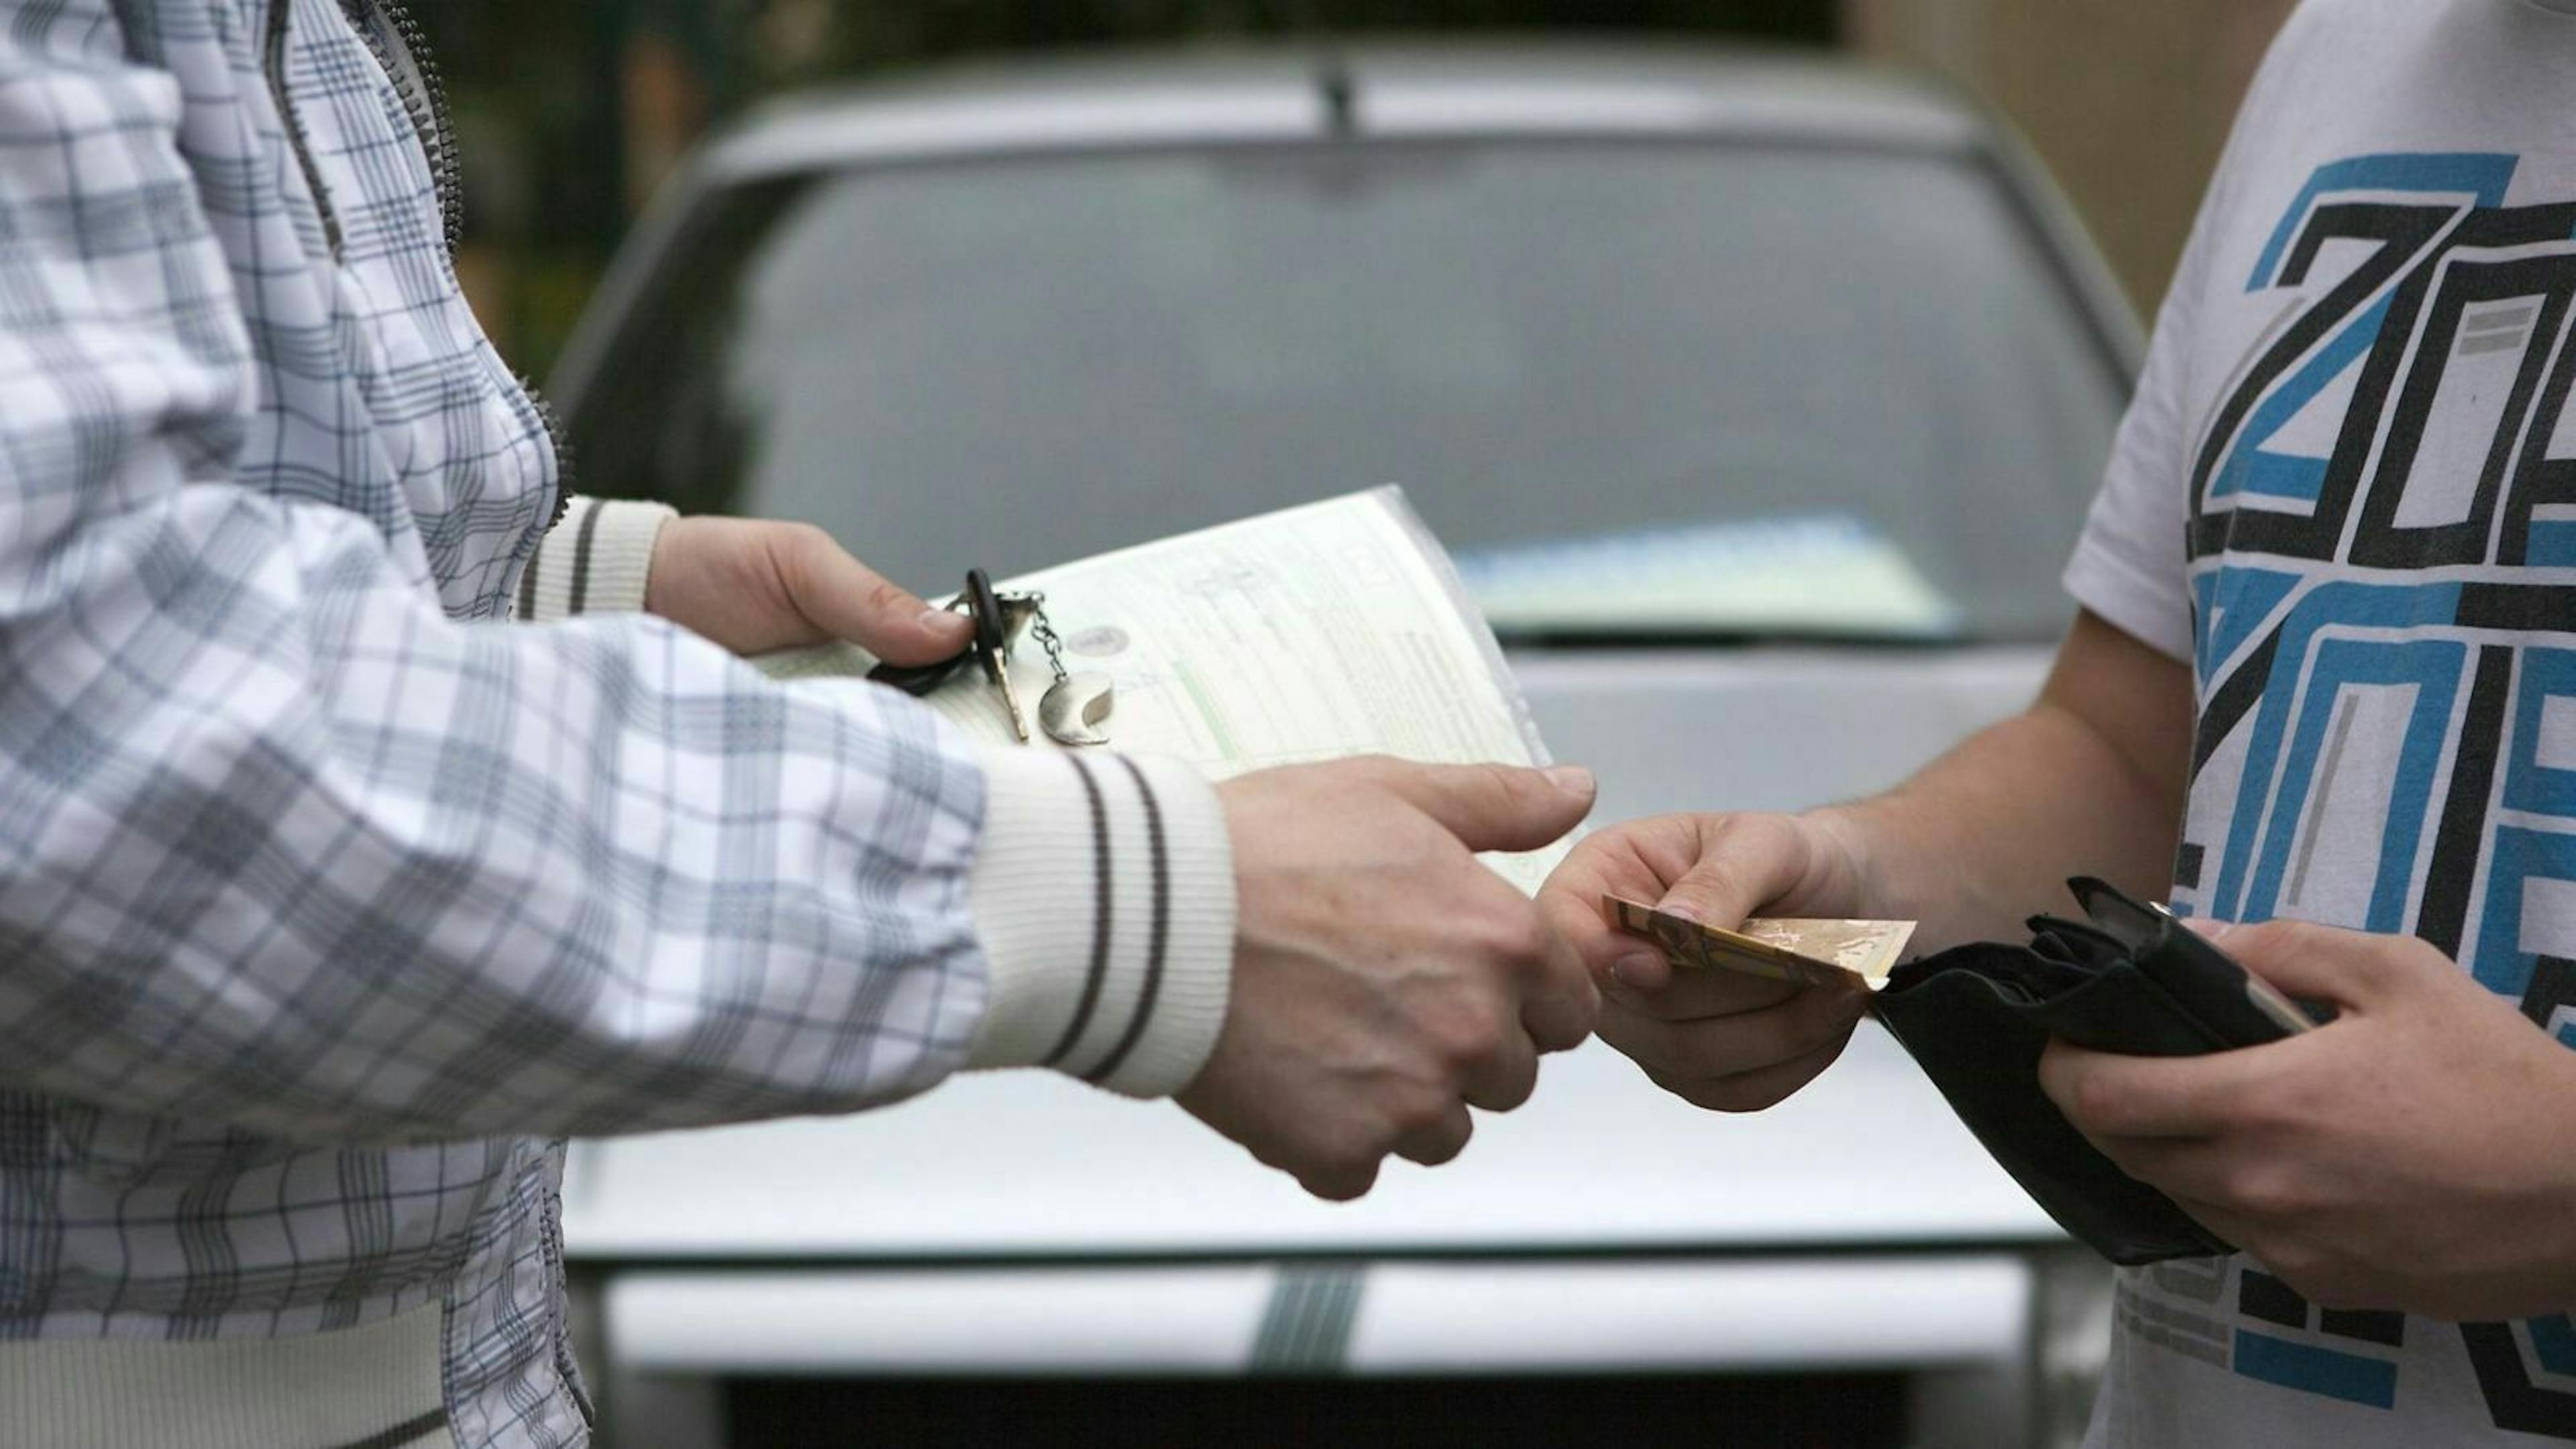 Wir erklären Dir, wie Du Dich beim Autokauf vor Betrügern schützen kannst.